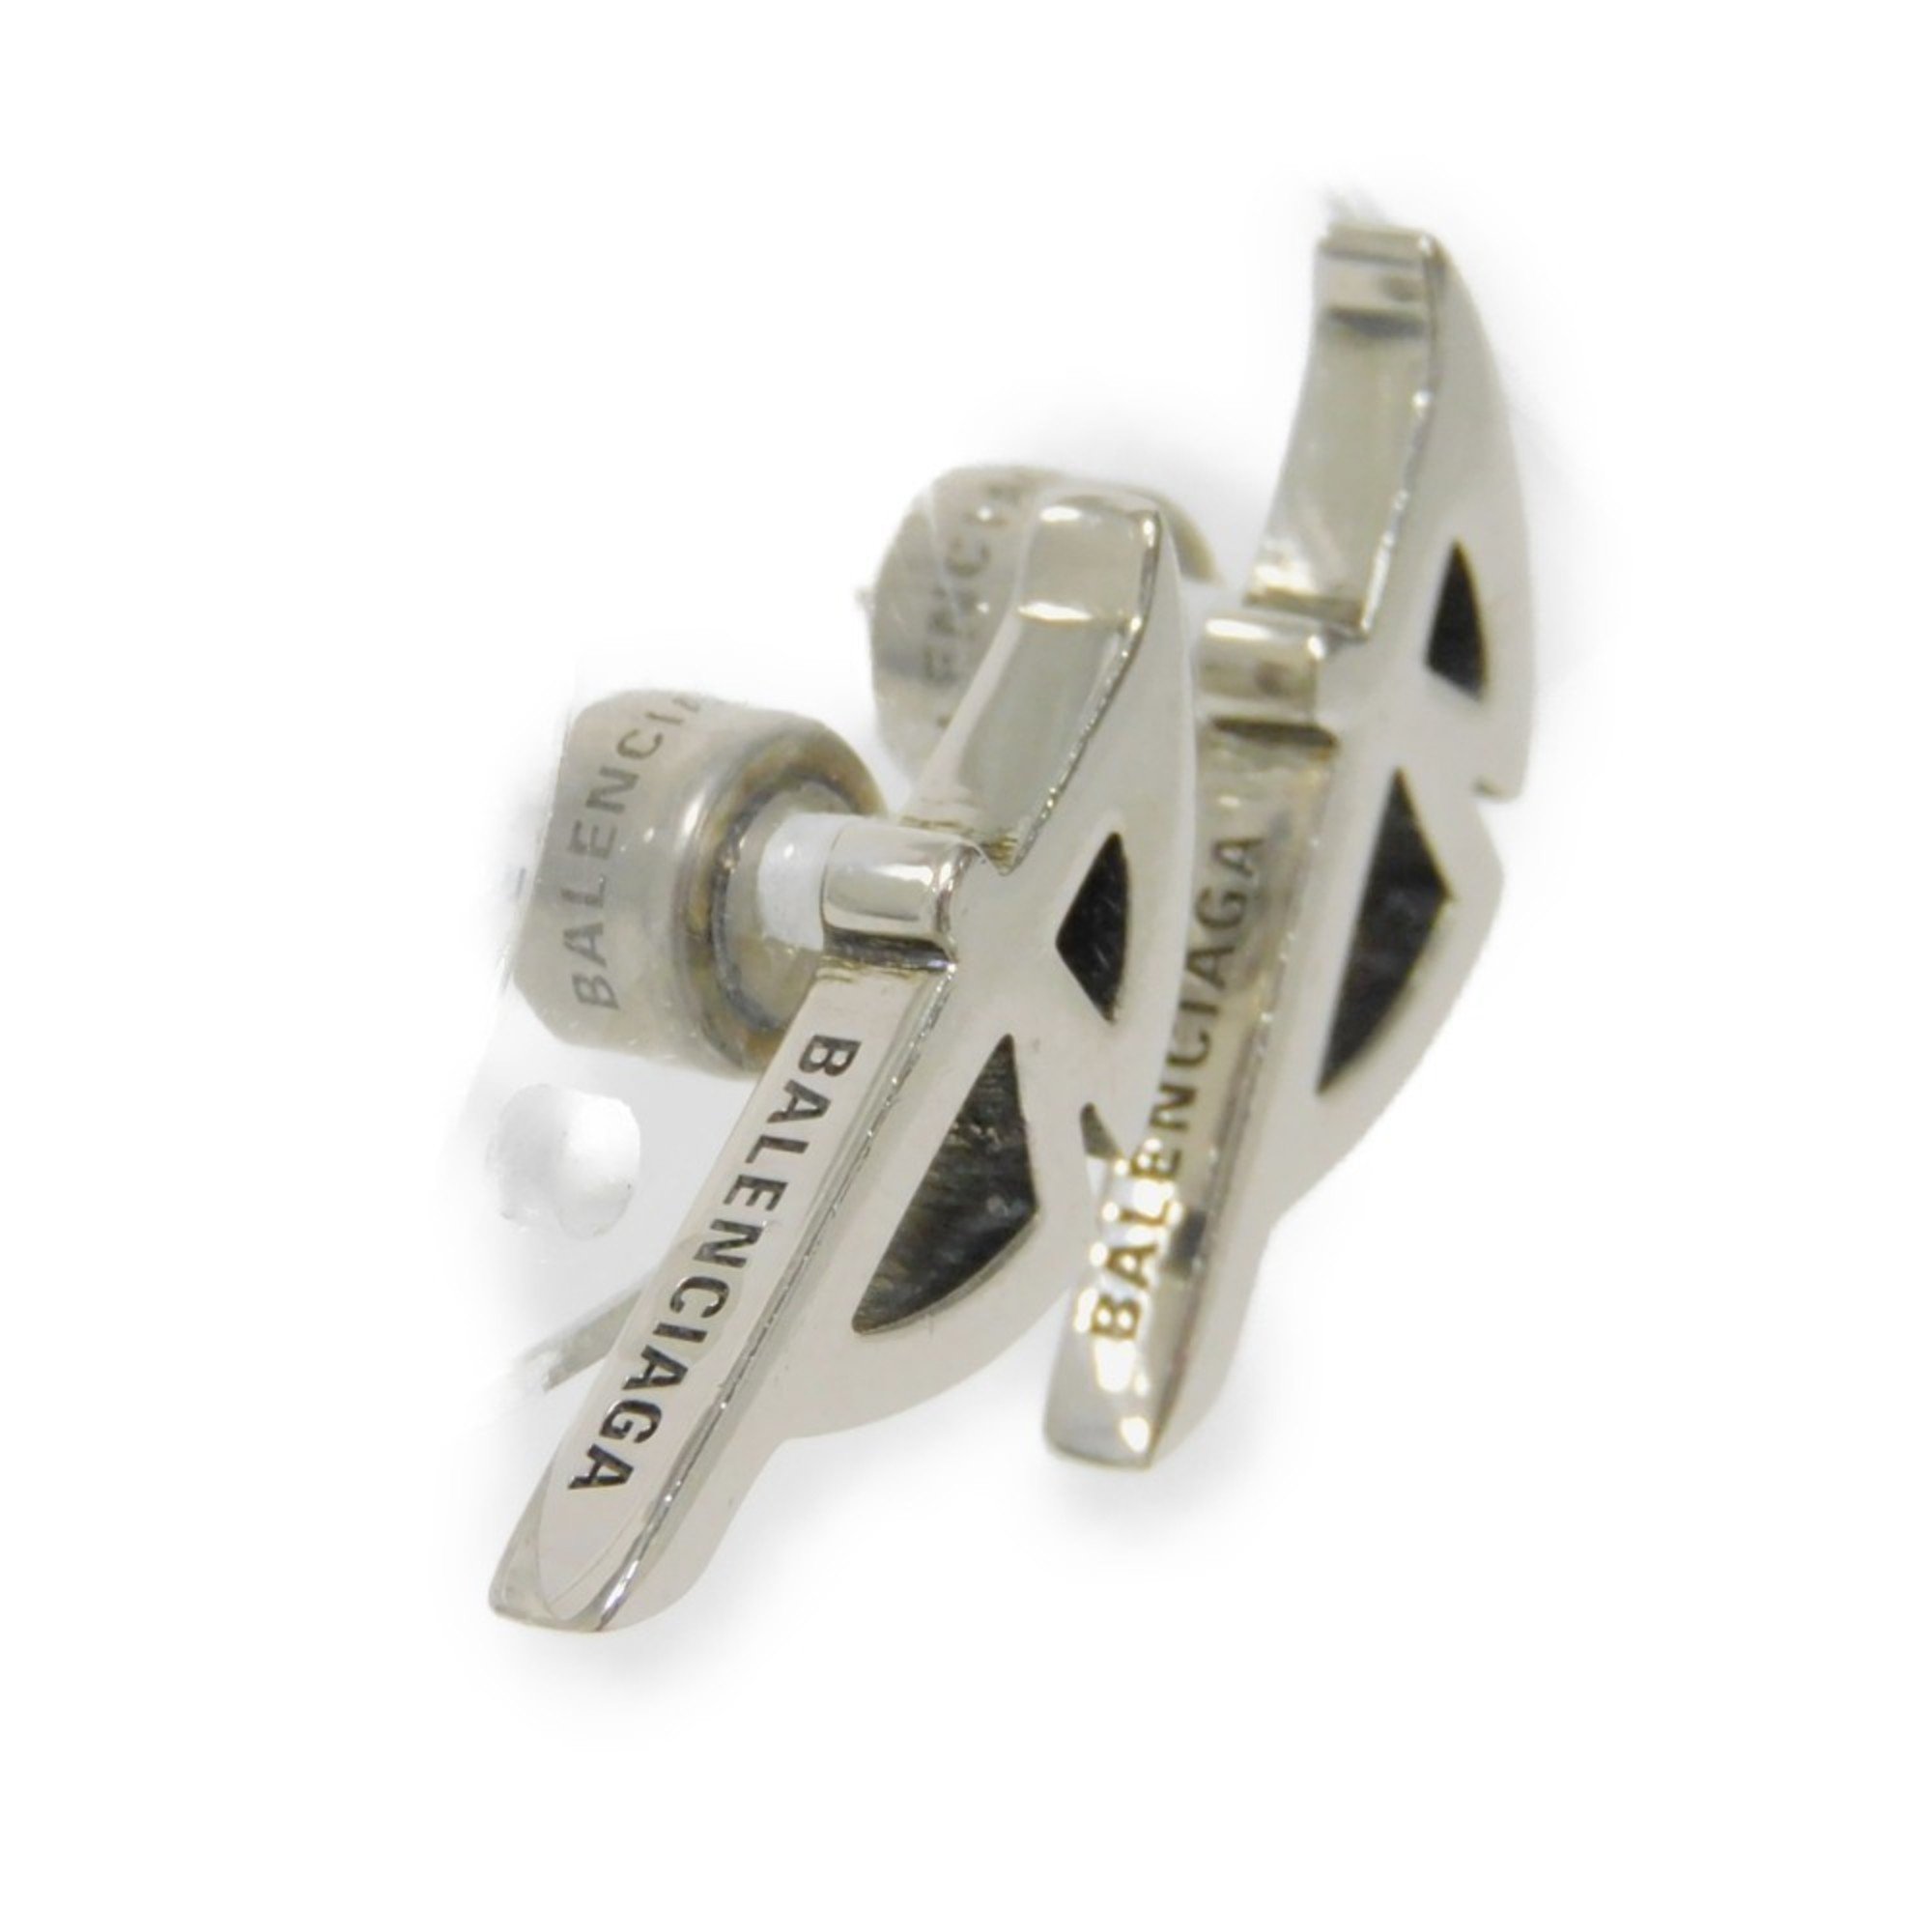 BALENCIAGA pierced earrings, Typo metal B side engraved studs, disc backs, brass, silver, 787785 TZ99I 0911, men's